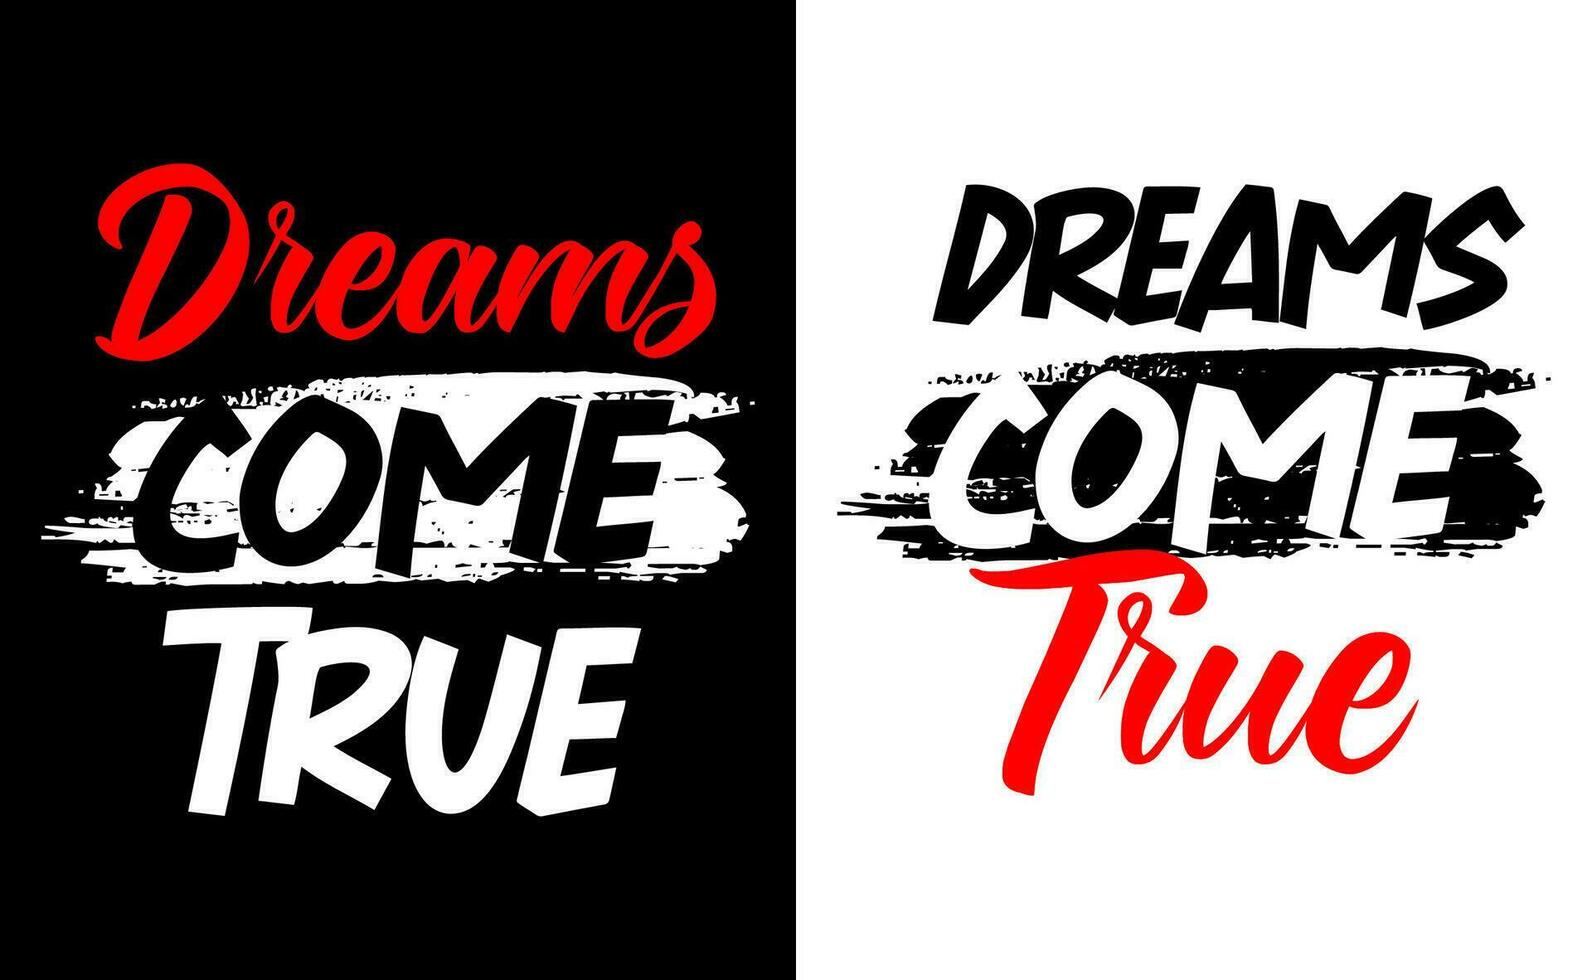 Träume Kommen Sie wahr motivierend kurz Zitate, motivierend zitieren, Bürste Schlaganfall. Banner, Poster, usw. Grunge Vektor Design.